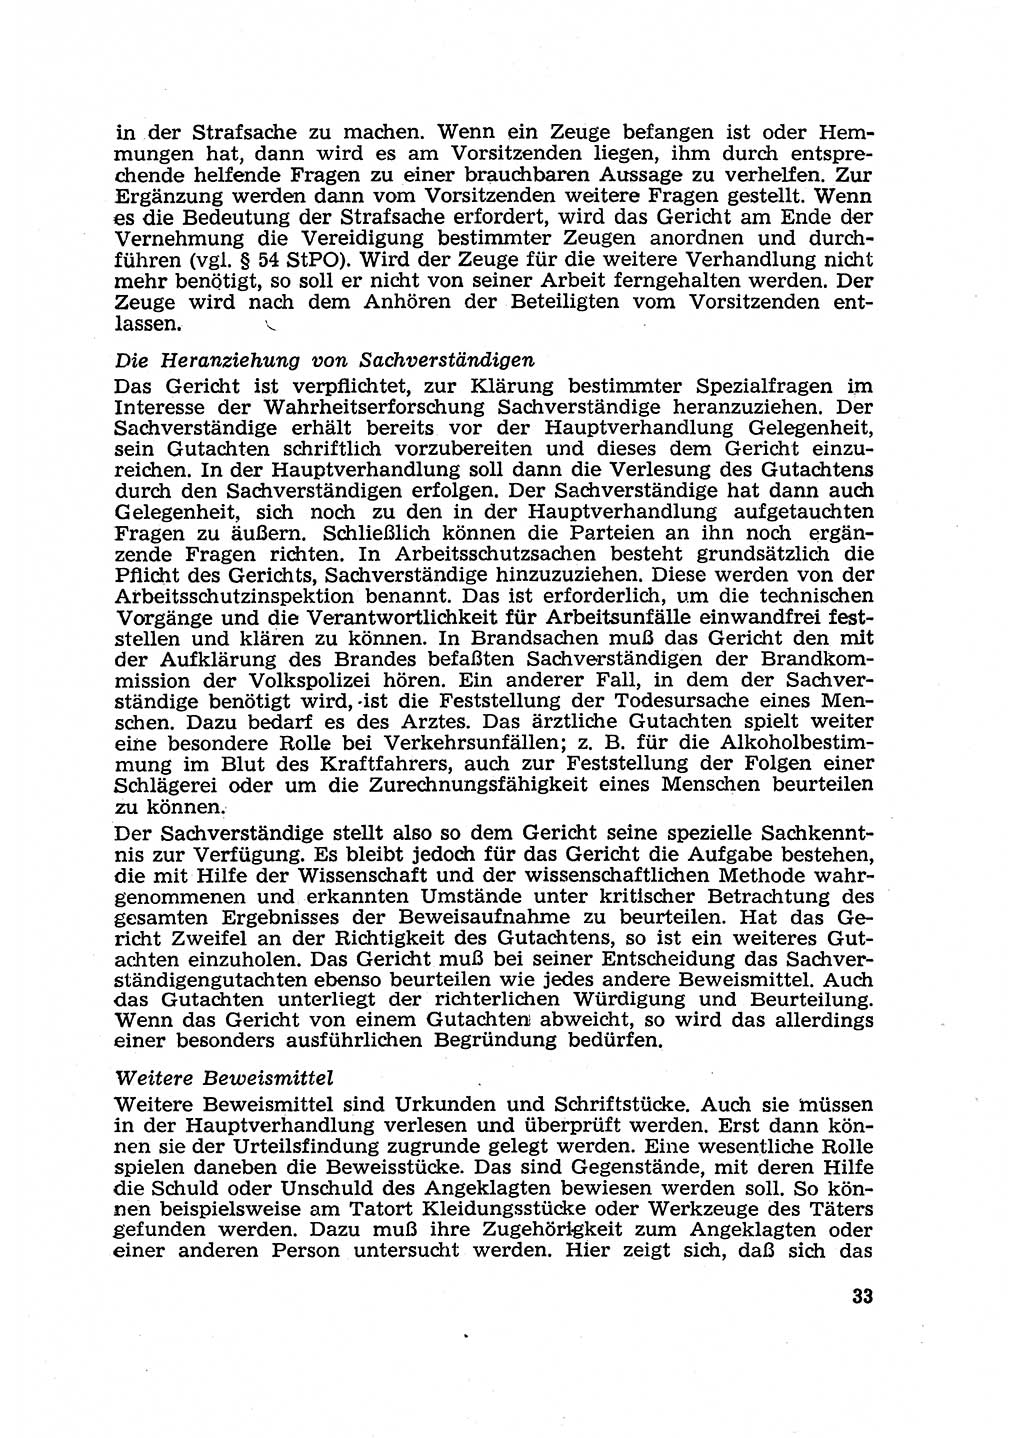 Strafverfahren in der Deutschen Demokratischen Republik (DDR) und seine demokratischen Prinzipien 1956, Seite 33 (Str.-Verf. DDR 1956, S. 33)